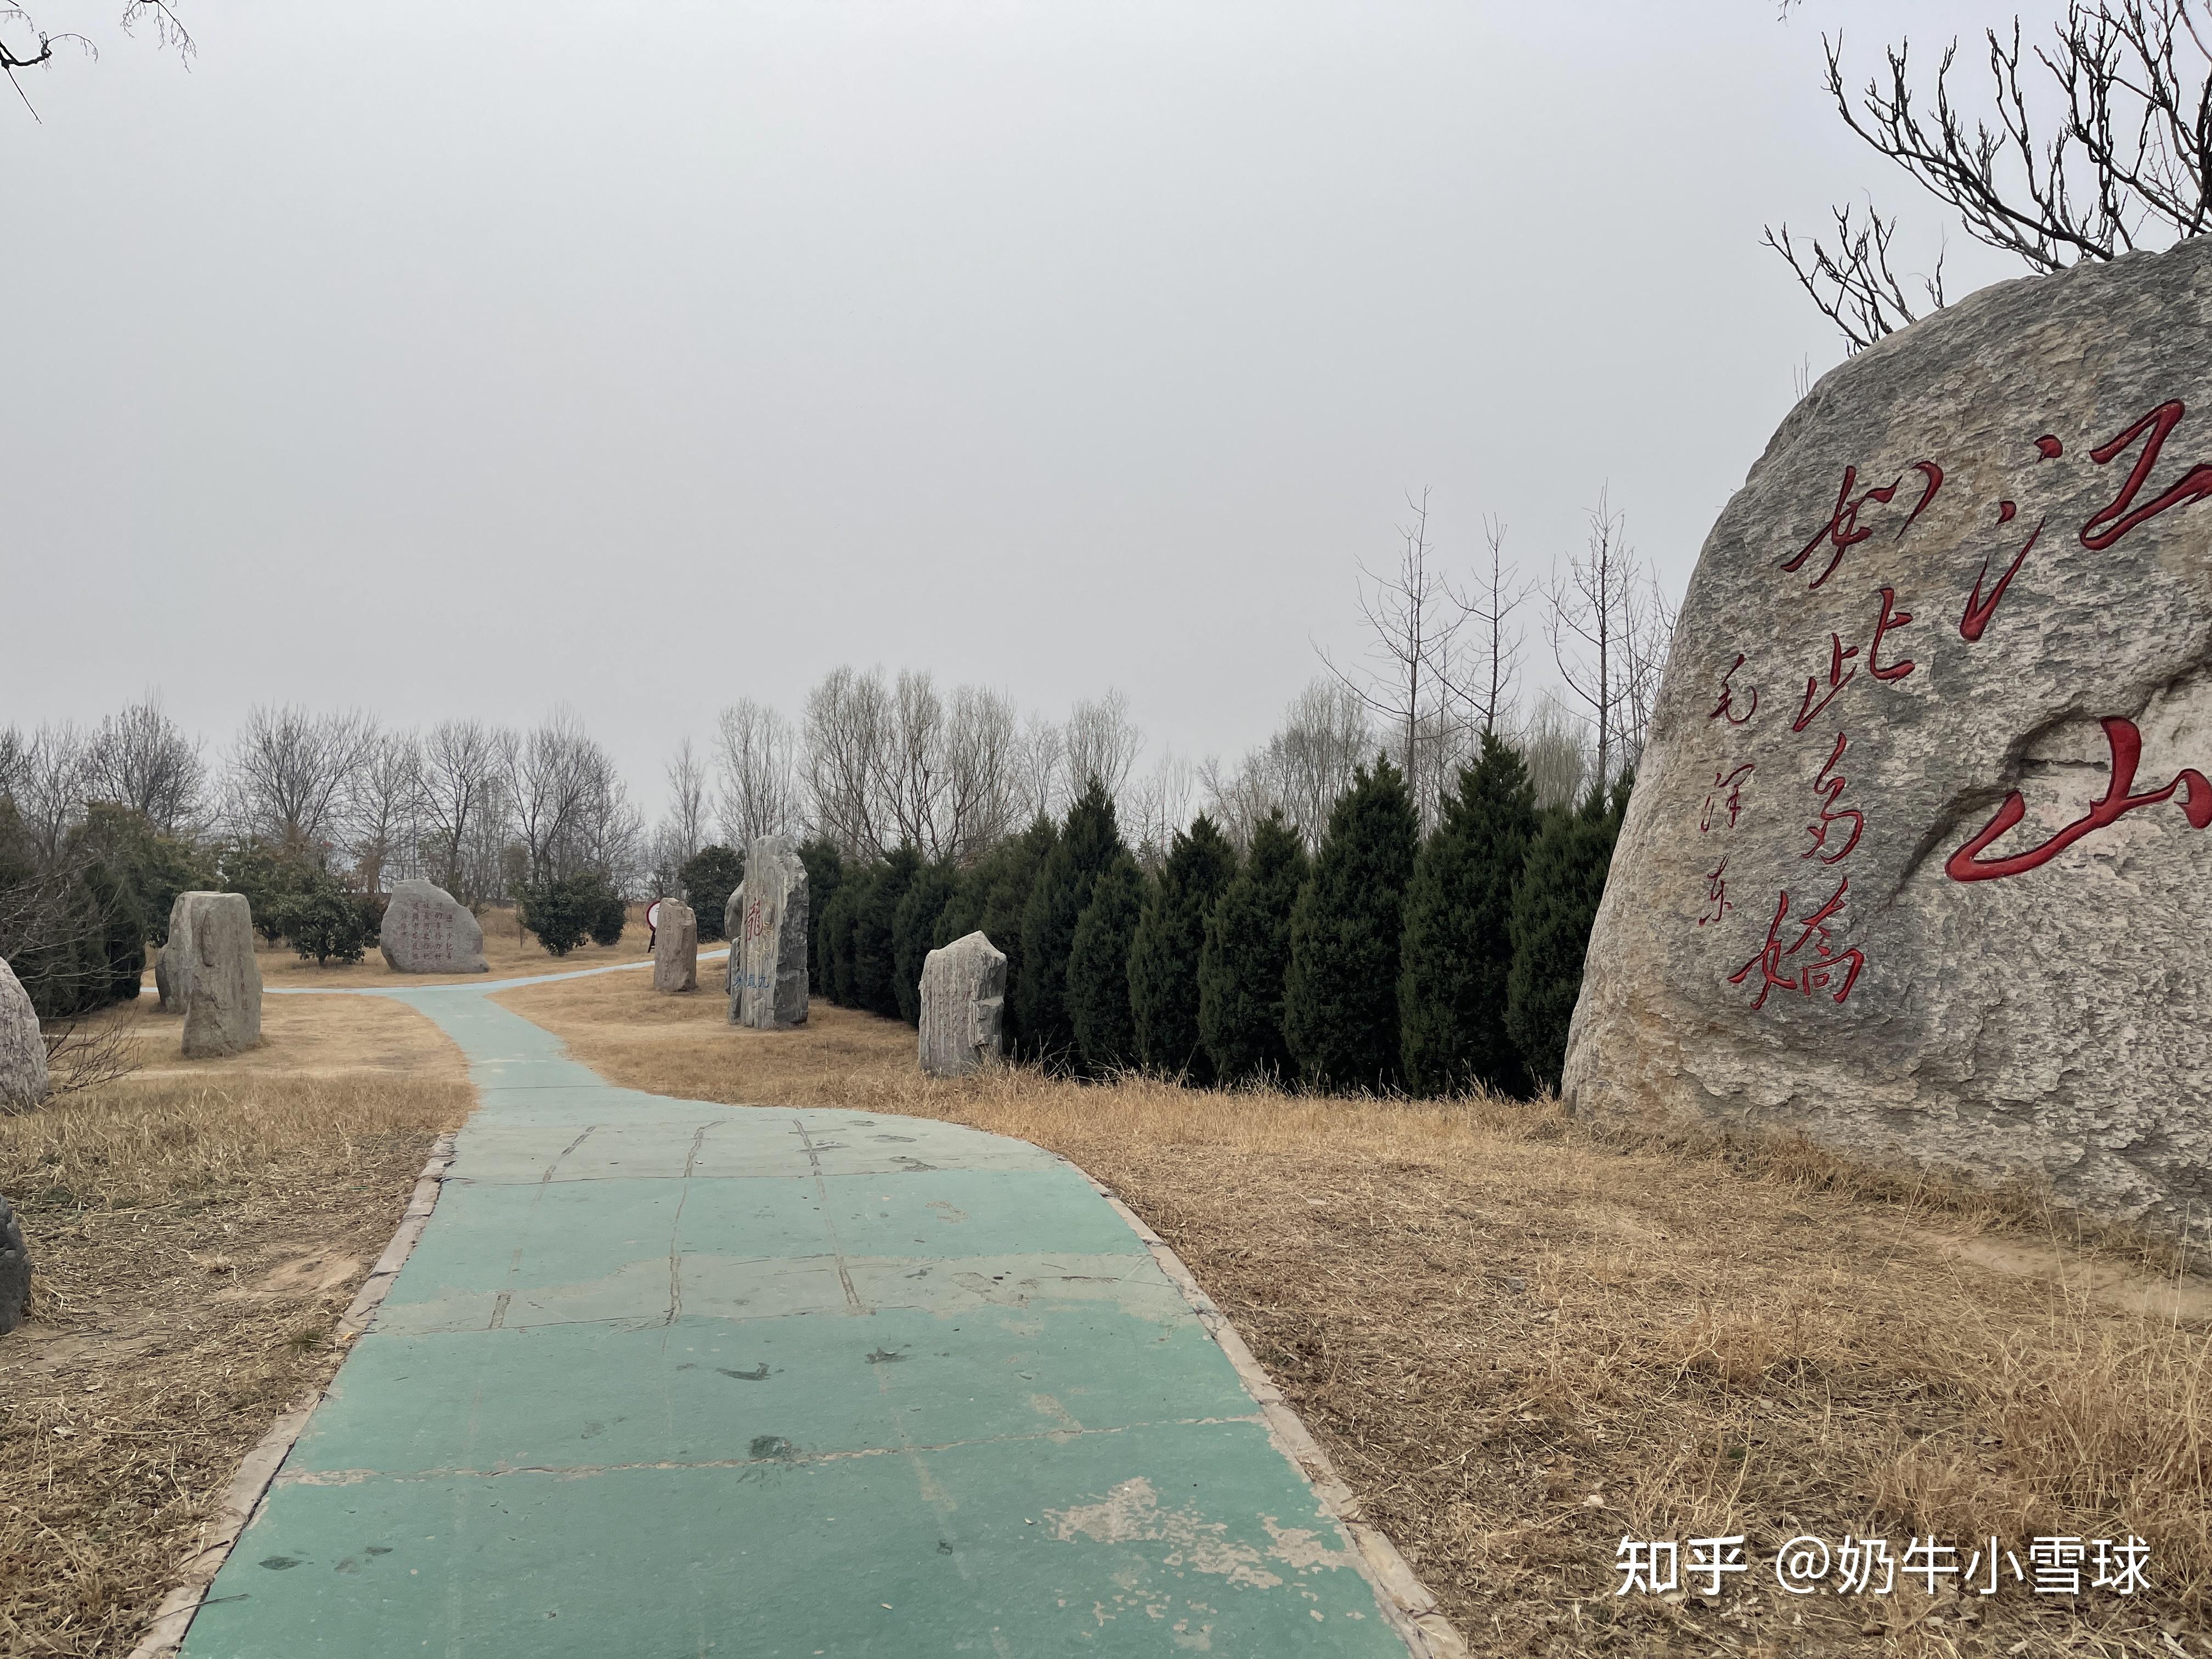 行走河南·读懂中国丨到郑州黄河文化公园 赴一场春天的约会 - 河南省文化和旅游厅